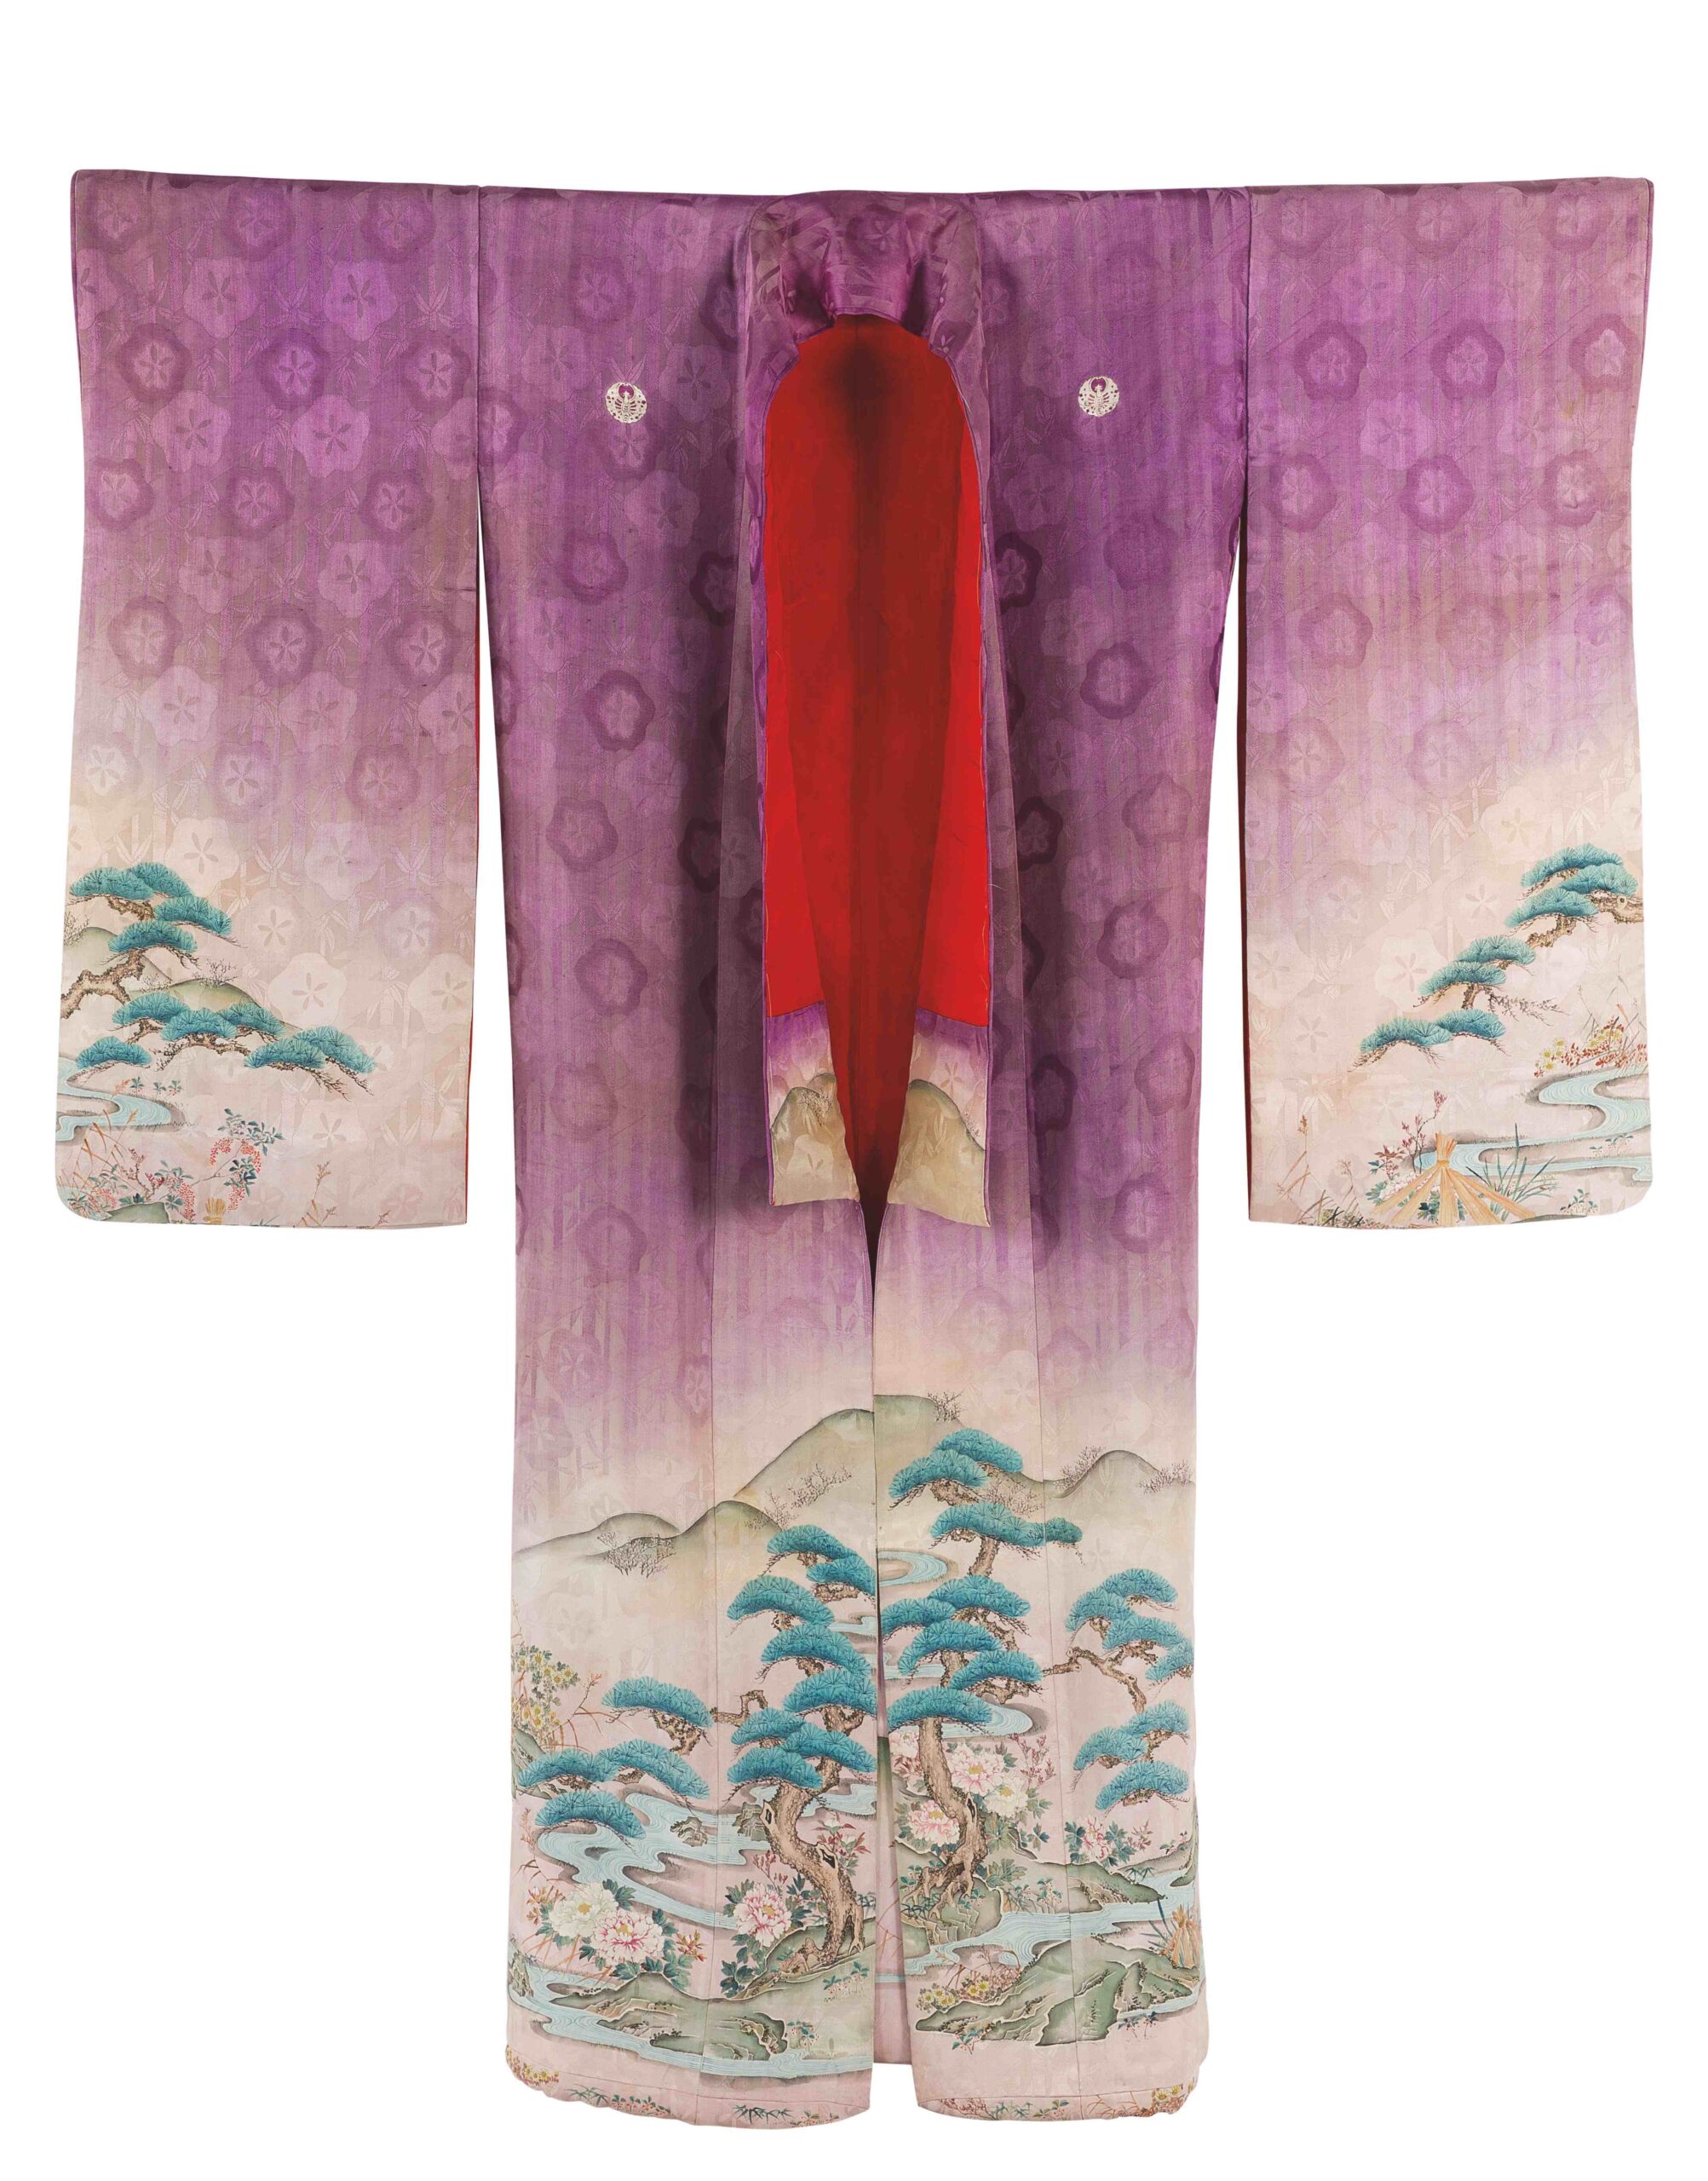 1 kimono formale da donna nubile (furisode) fronte foto di luigi vitale